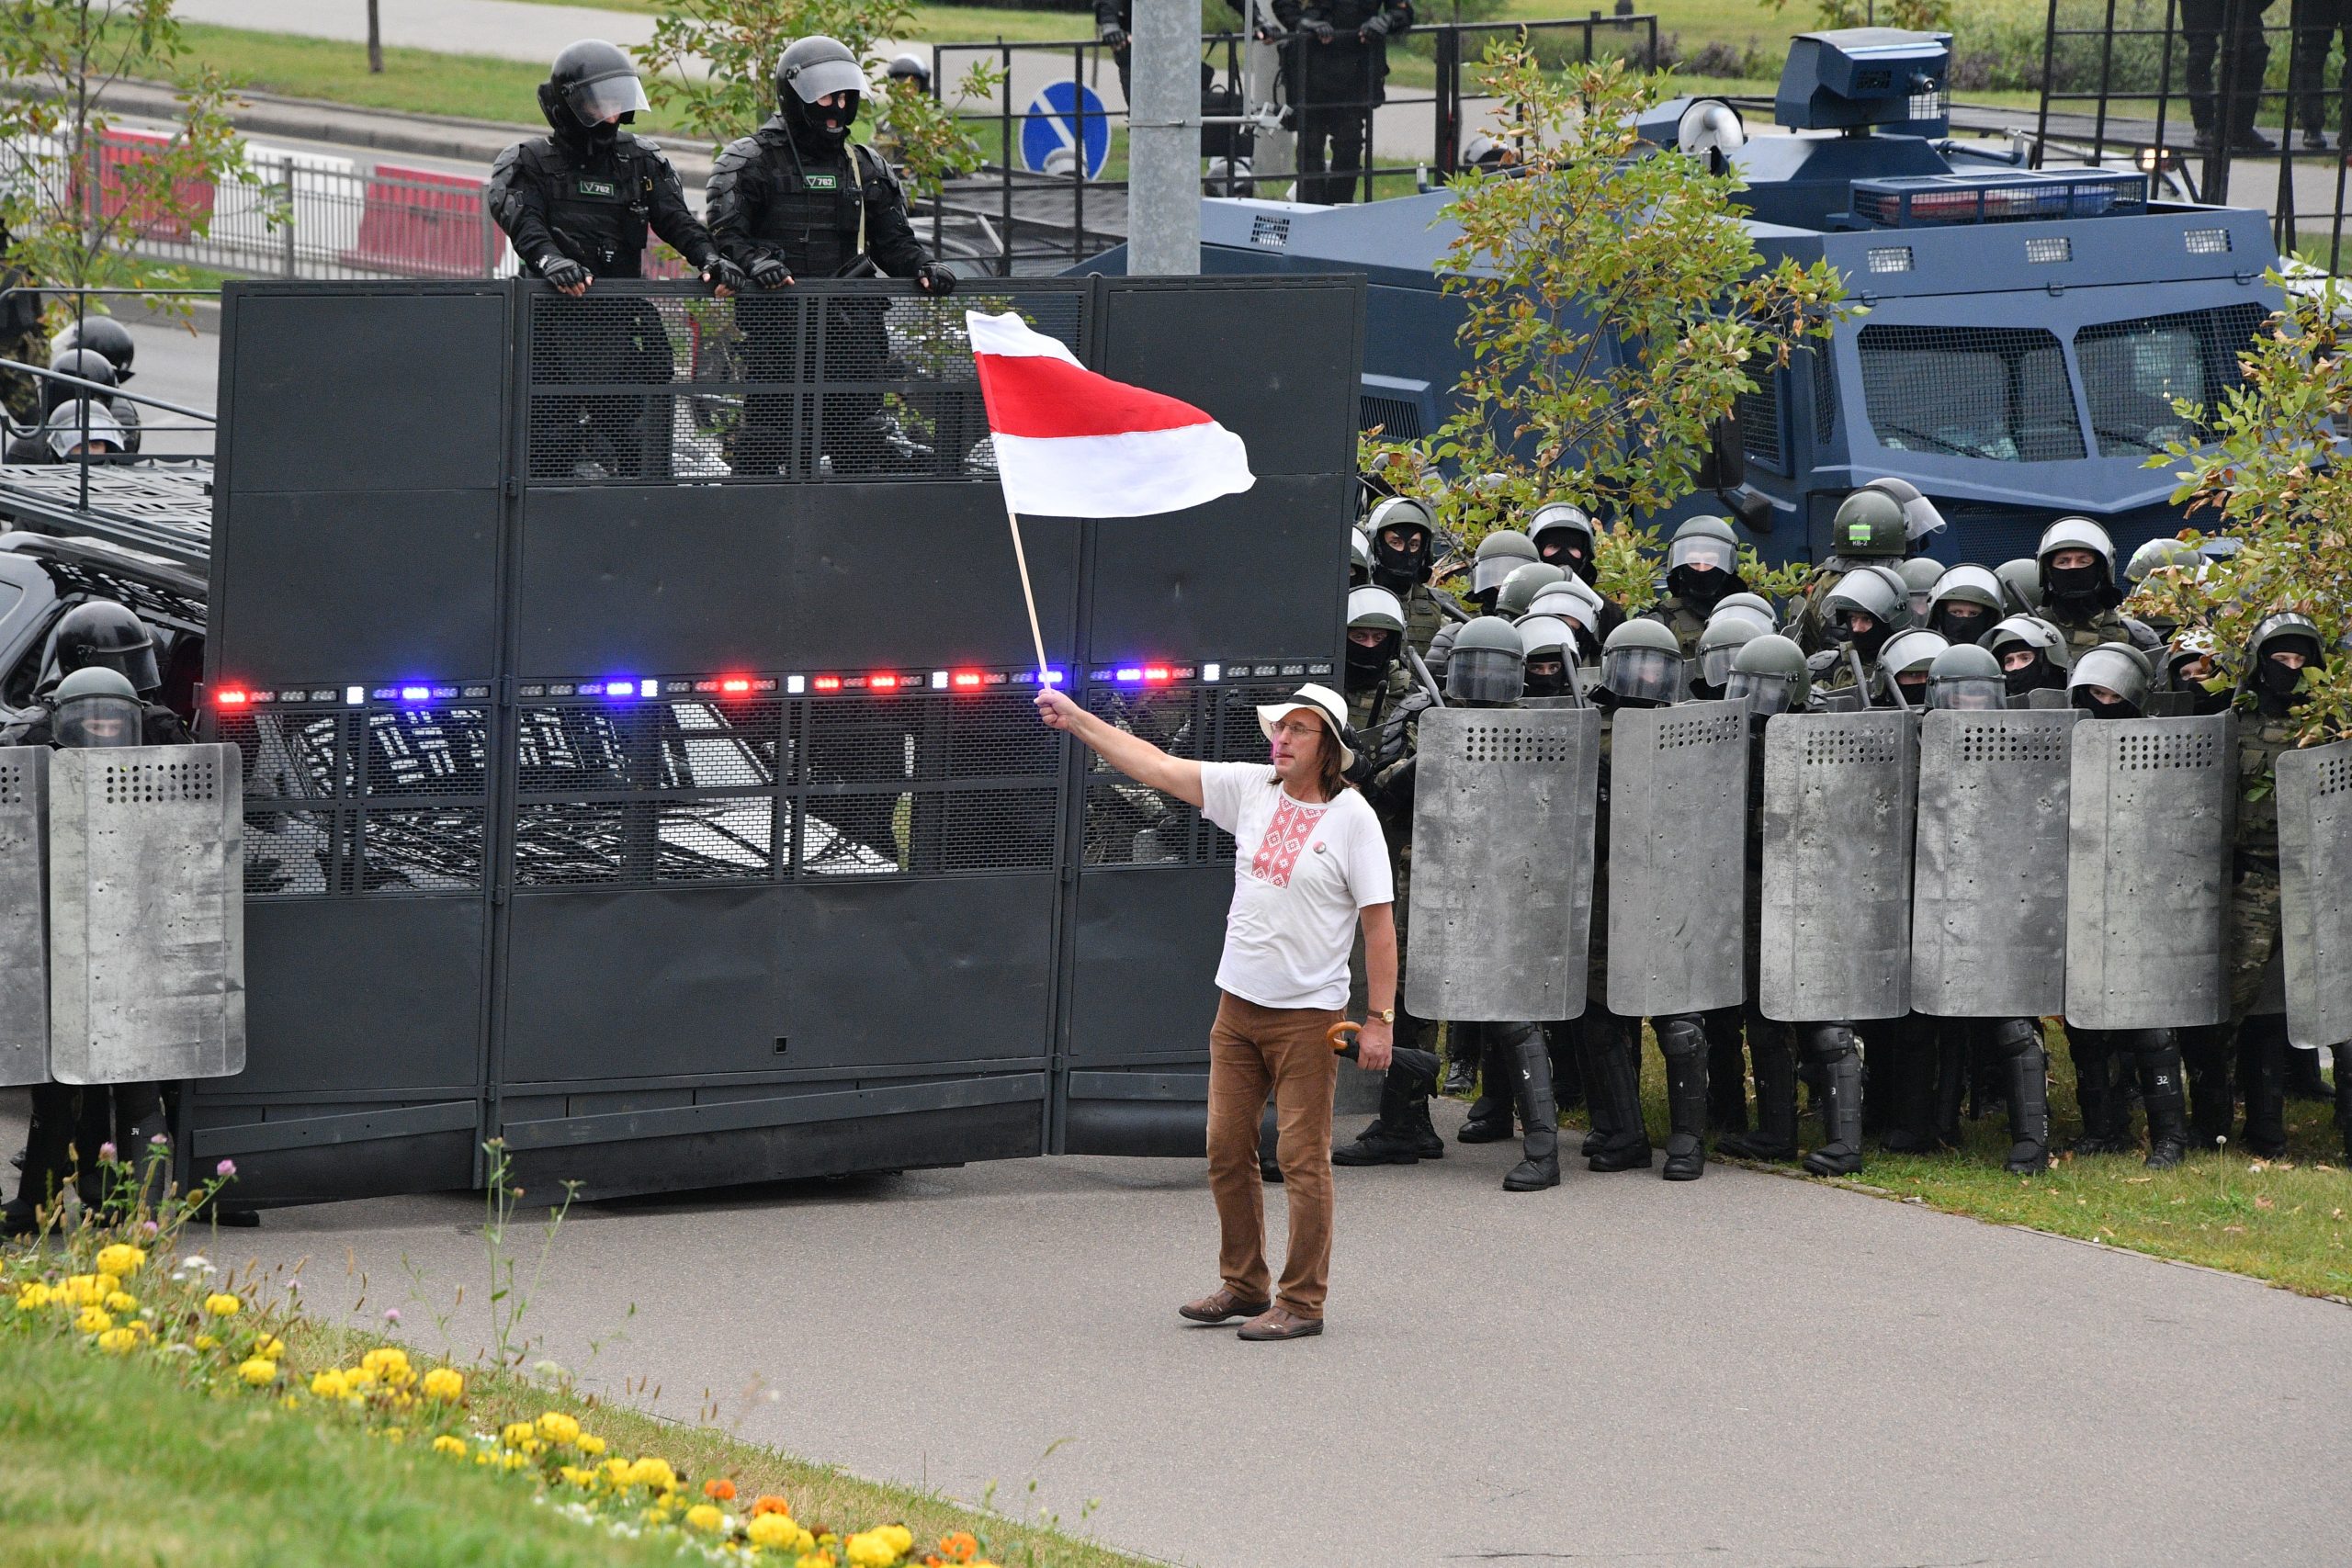  Недавно умерший за решеткой художник Алесь Пушкин держит бело-красно-белый флаг перед бойцами ОМОН на акции протеста. Лето 2020 года. Фото: belsat.by.